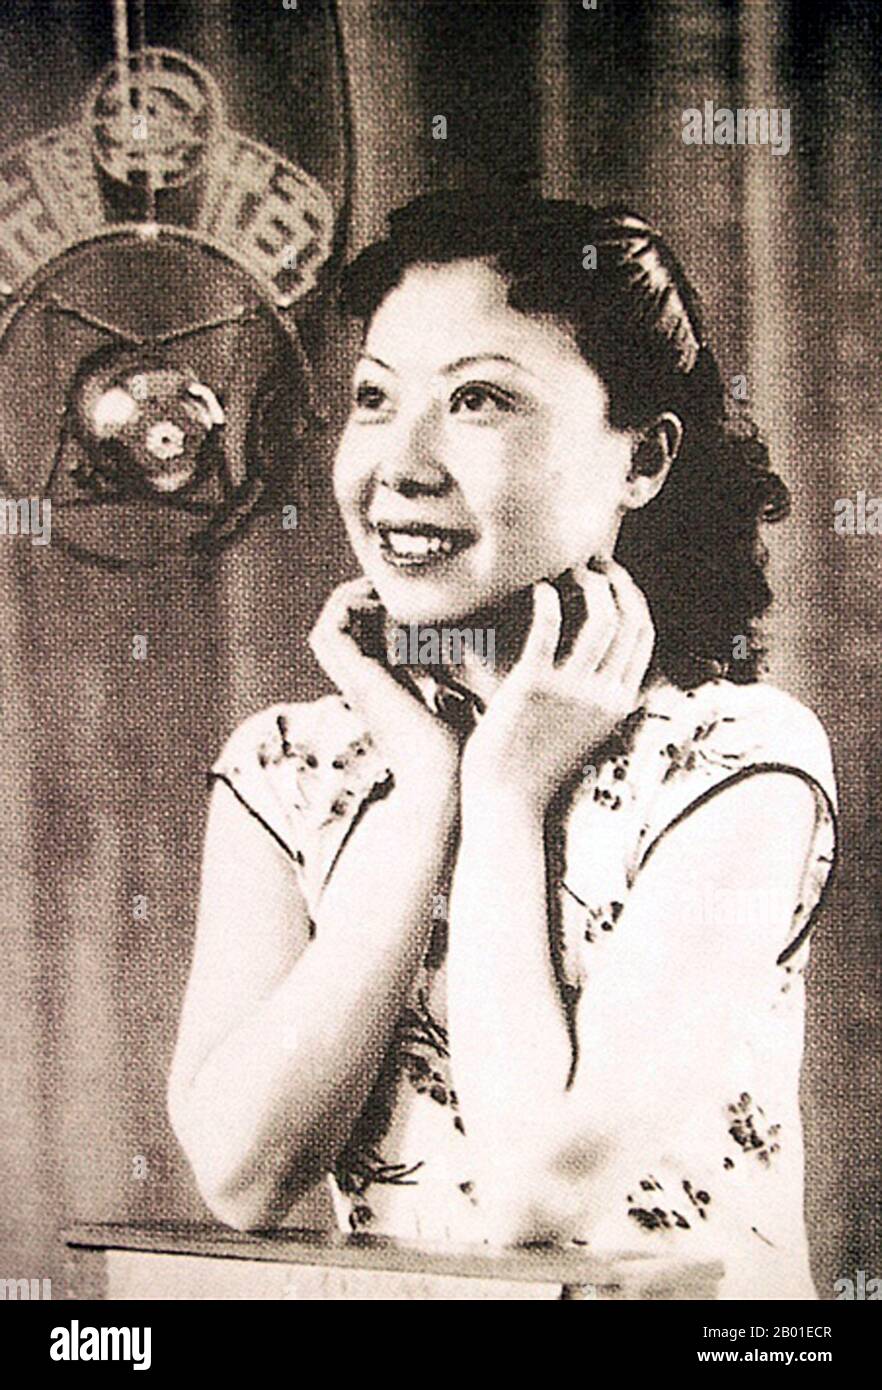 China: Bai Hong (24. Februar 1920 - 28. Mai 1992), Filmstar und Sänger, c. 1940er. Bai Hong wurde mit dem Geburtsnamen Bai Lizhu (白丽珠) in Peking geboren. In den 1940er Jahren wurde sie zu einer der „großen singenden Stars“ Chinas in jungen Jahren. Bai schloss sich der Bright Moonlight Song and Dance Troupe an, wo sie in die Unterhaltungsindustrie von Shanghai eintrat. Sie benutzte den Künstlernamen (白虹), was übersetzt „Weißer Regenbogen“ bedeutet. In den 1930er Jahren war sie eine beliebte Ikone, die für ihre Beherrschung der Sprache und Klarheit beim Ausdrücken von Texten bekannt war, was ihr dabei half, viele Fans zu gewinnen. Stockfoto